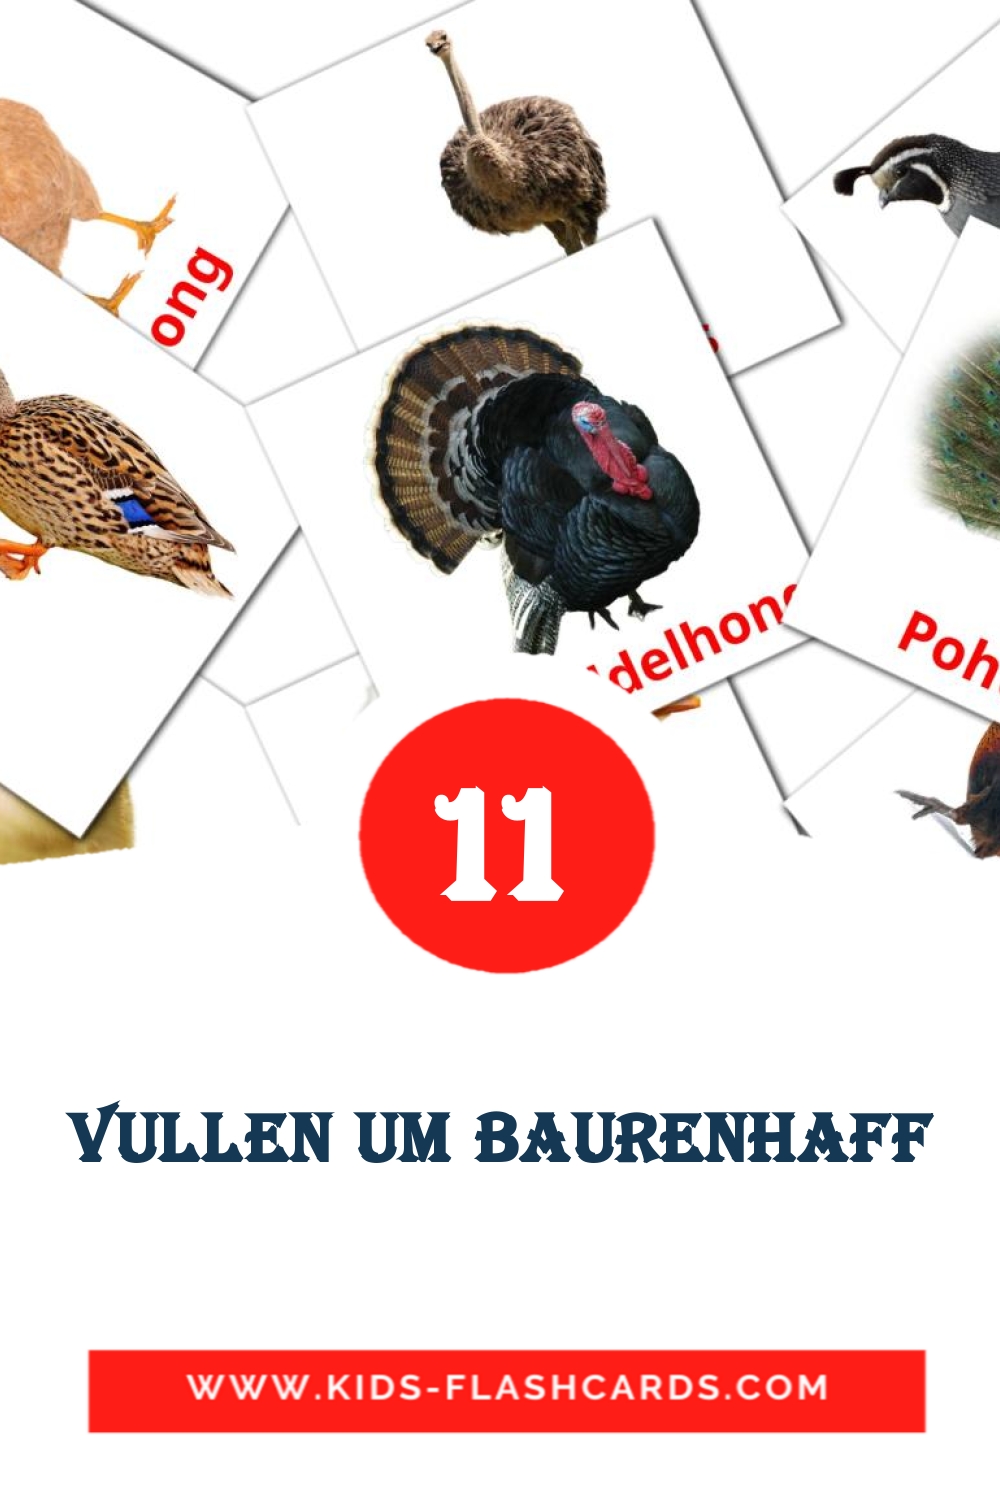 Vullen um Baurenhaff на люксембургском для Детского Сада (11 карточек)